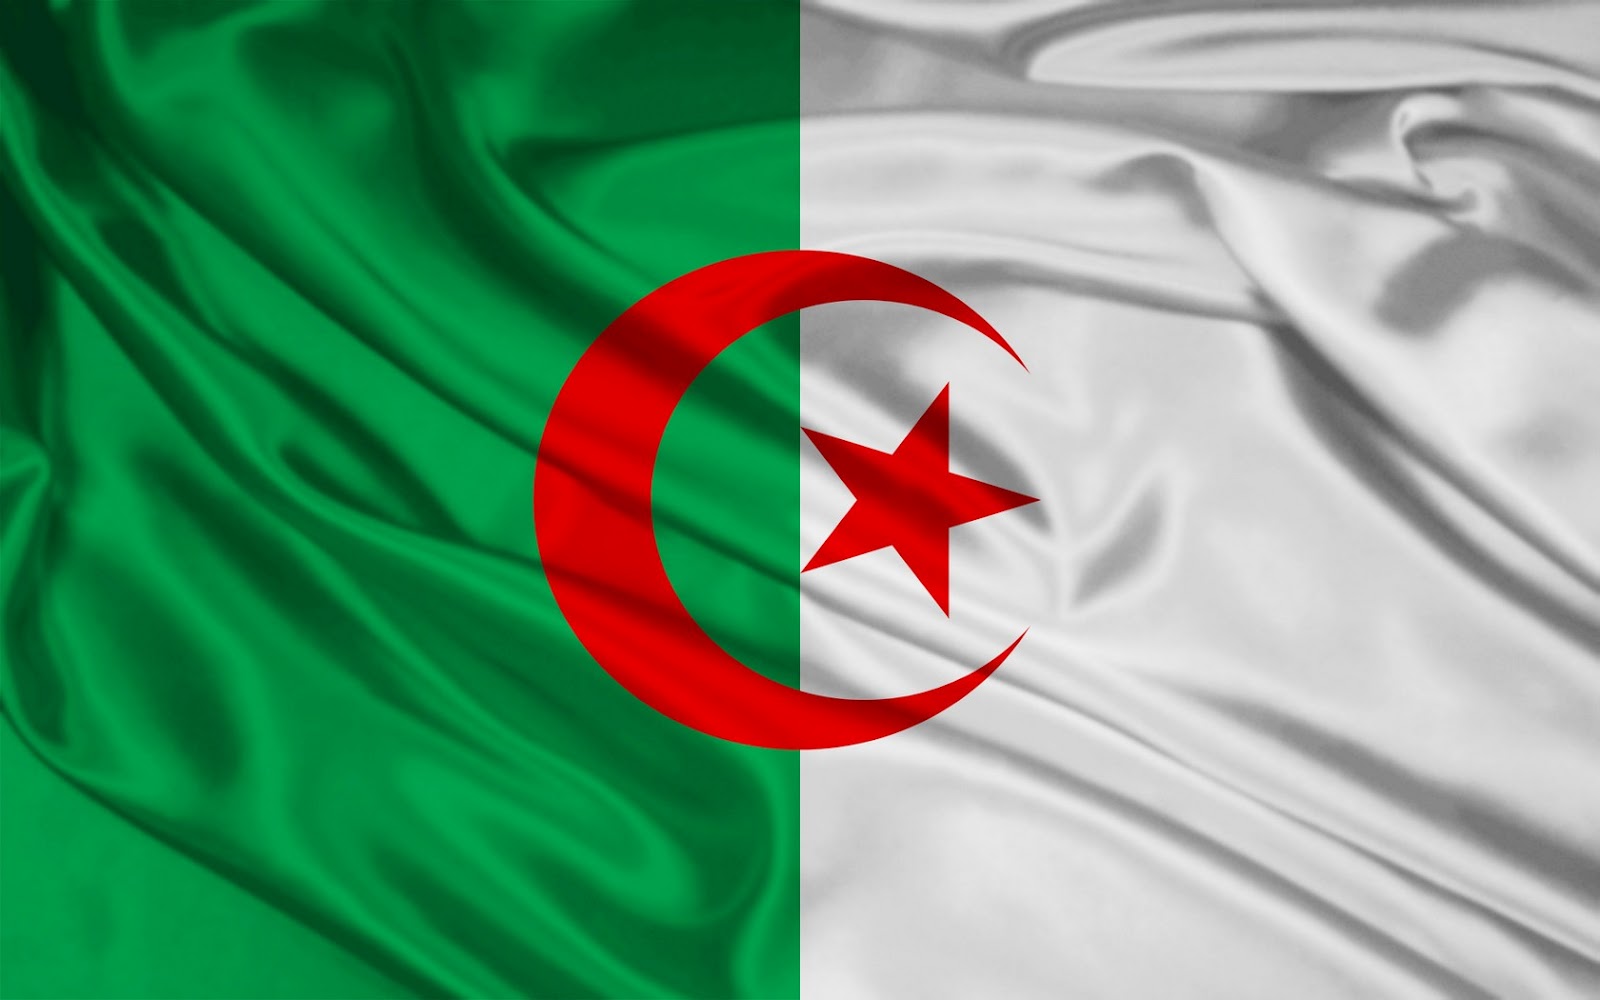 عائدات المحروقات تنخفض الى النصف في الجزائر خلال النصف الاول من العام 2015